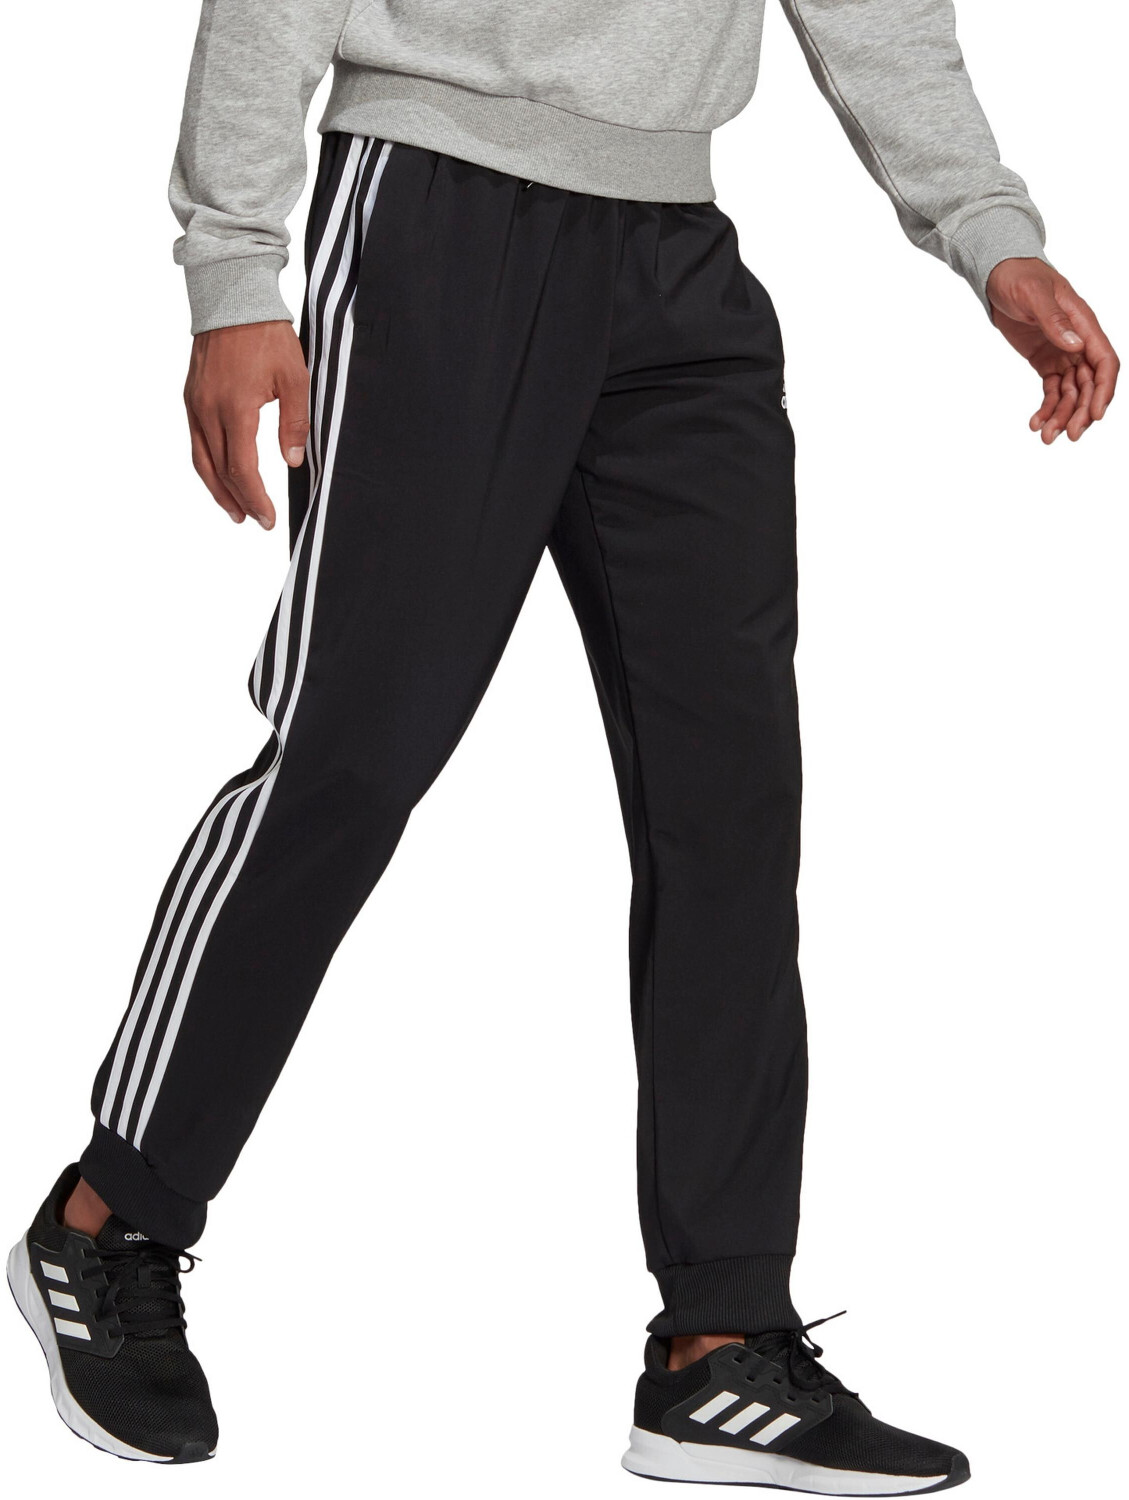 Pantalon jogging fitness homme coton majoritaire coupe droite - 3 Stripes  noir ADIDAS